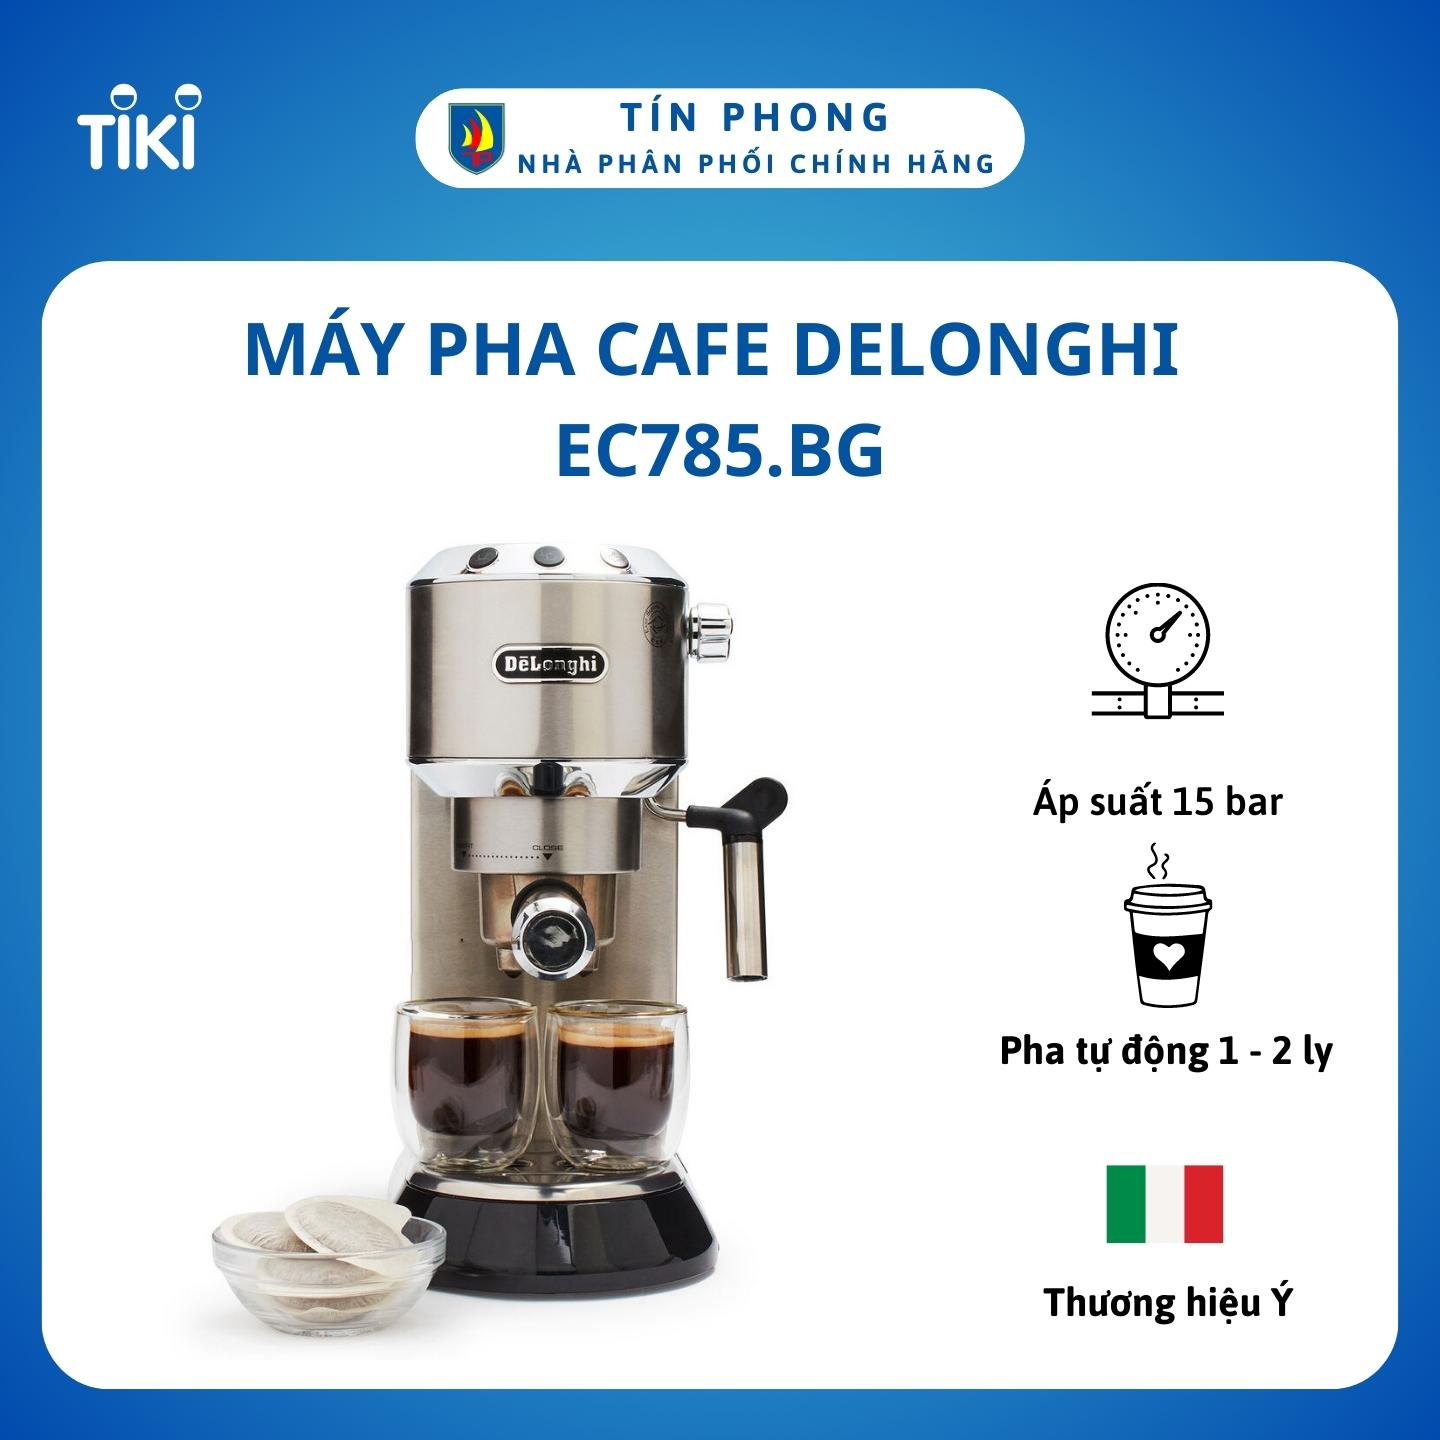 Máy pha cafe Delonghi EC785.BG - Dung tích 1.1 lít - Tự động ngắt khi pha xong - Thương hiệu Ý - Công suất 1350W - Hàng chính hãng - Màu Kem